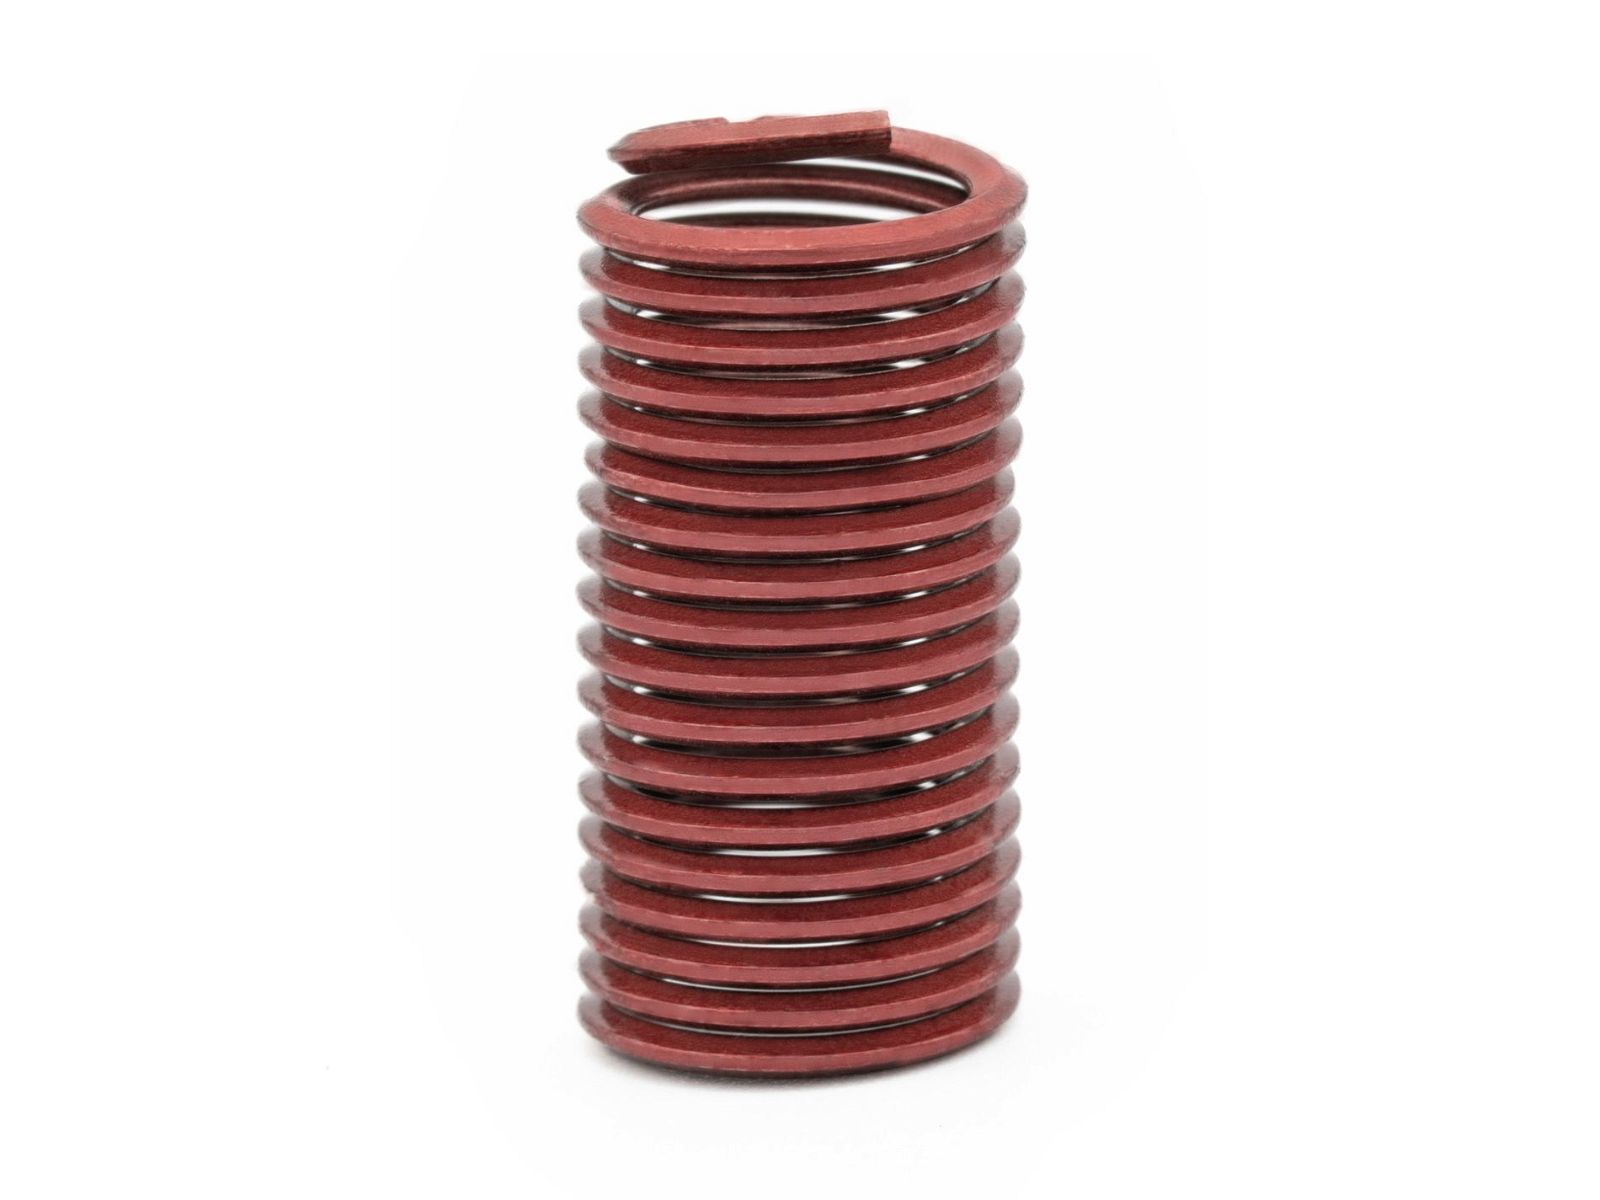 BaerCoil Wire Thread Inserts UNC 5/8 x 11 - 3.0 D (47.63 mm) - screw grip (screw locking) - 50 pcs.